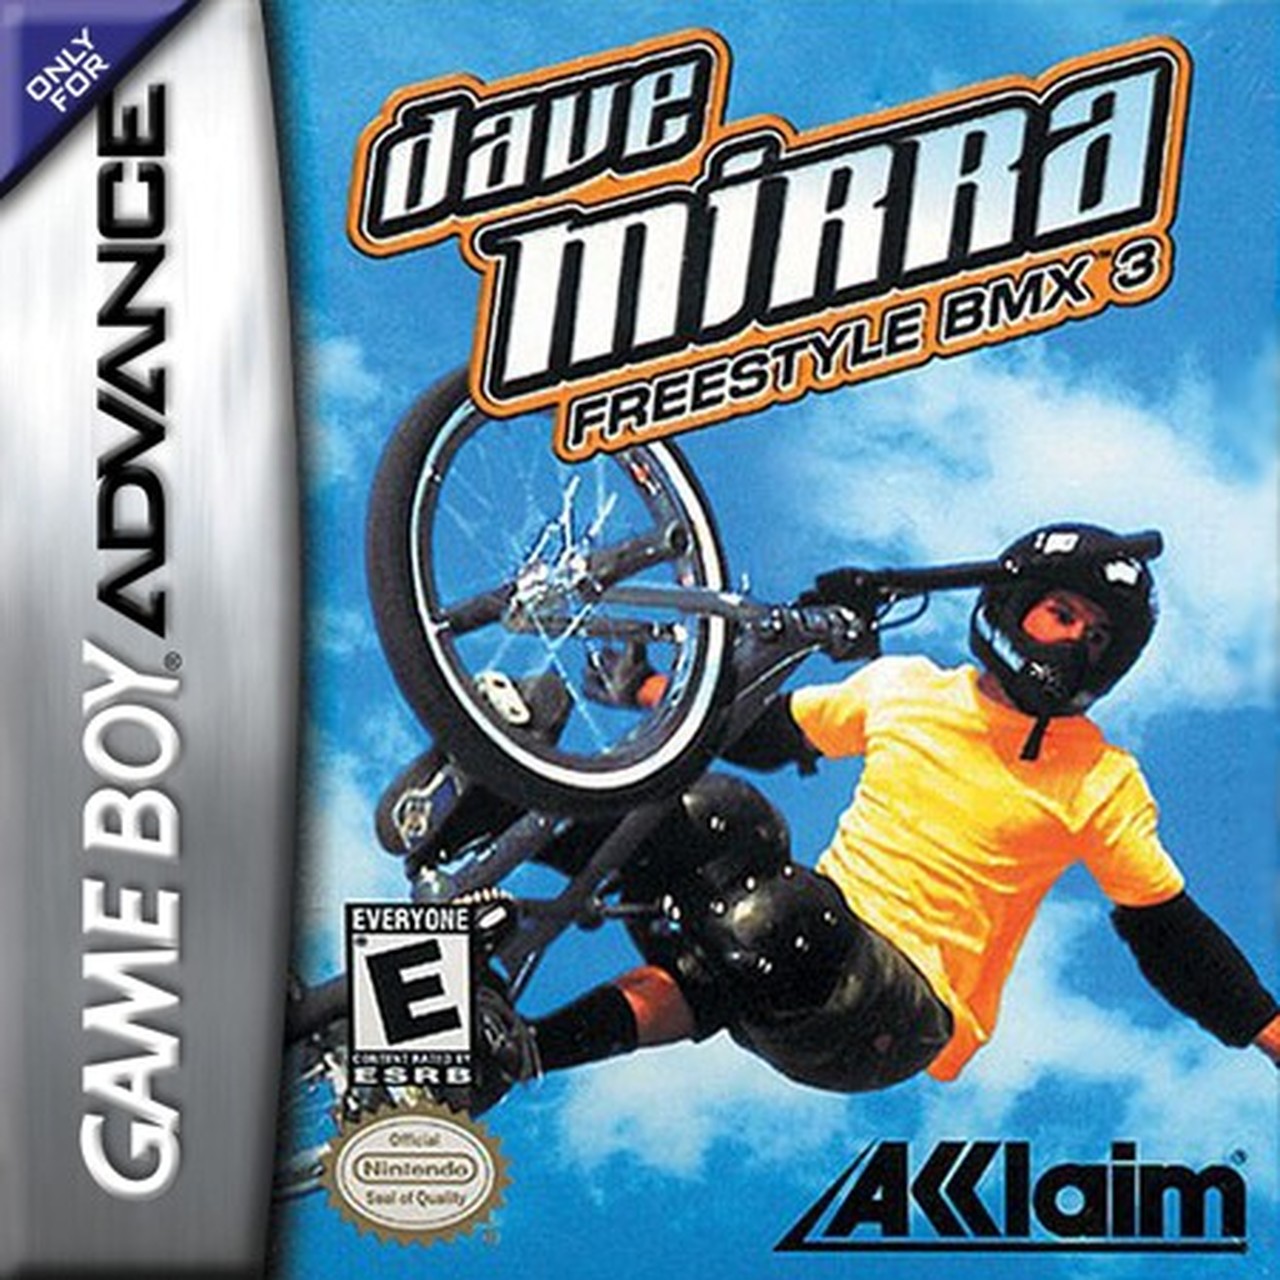 Dave Mirra Freestyle BMX 3 (Gameboy Advance)